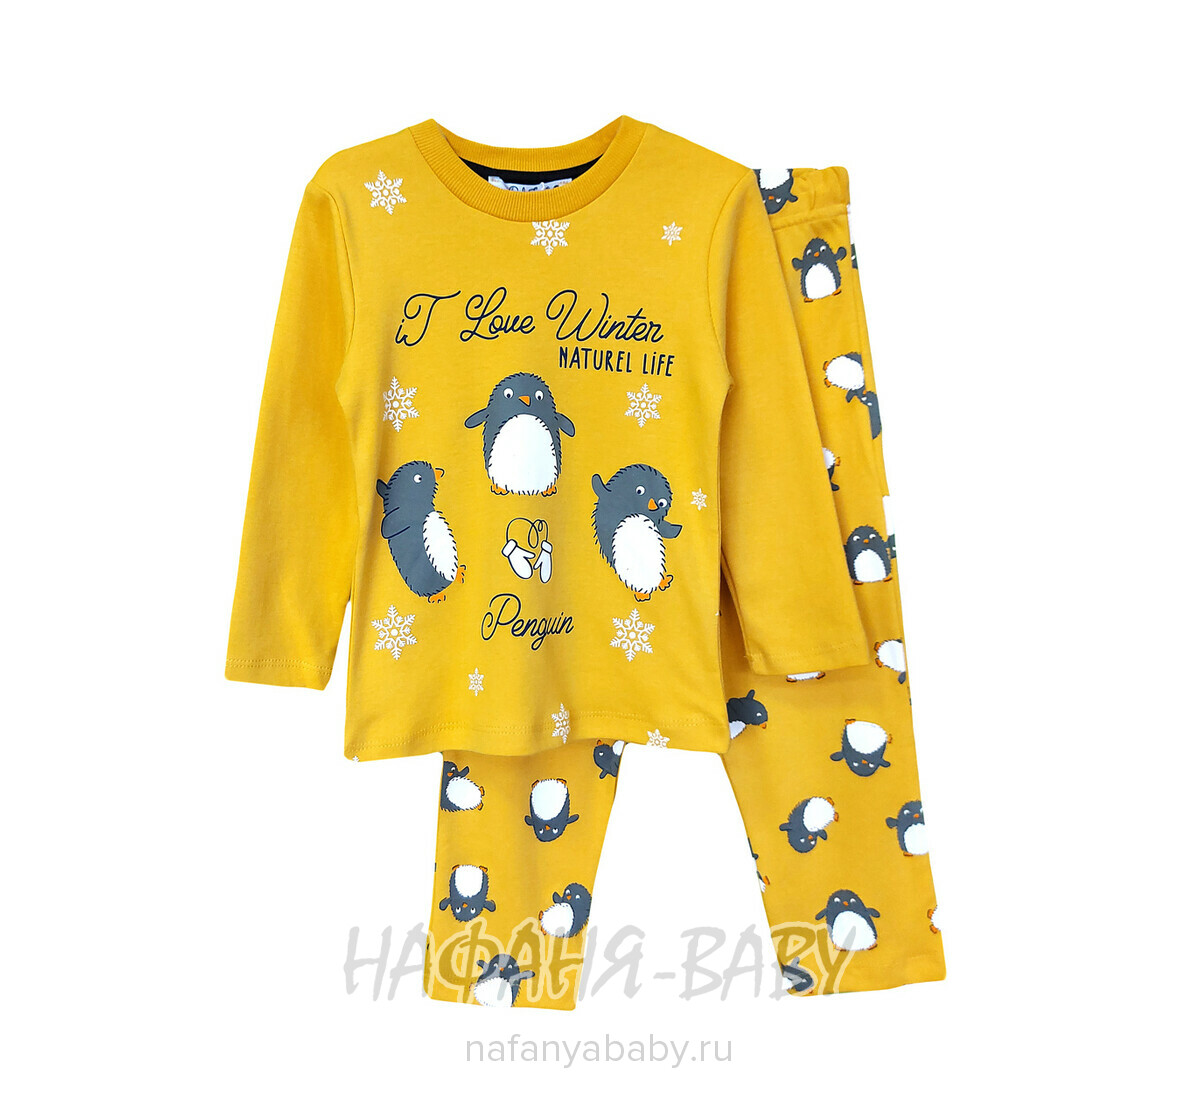 Детская пижама POLI FONI арт: 302, 5-9 лет, 1-4 года, цвет горчичный, оптом Турция